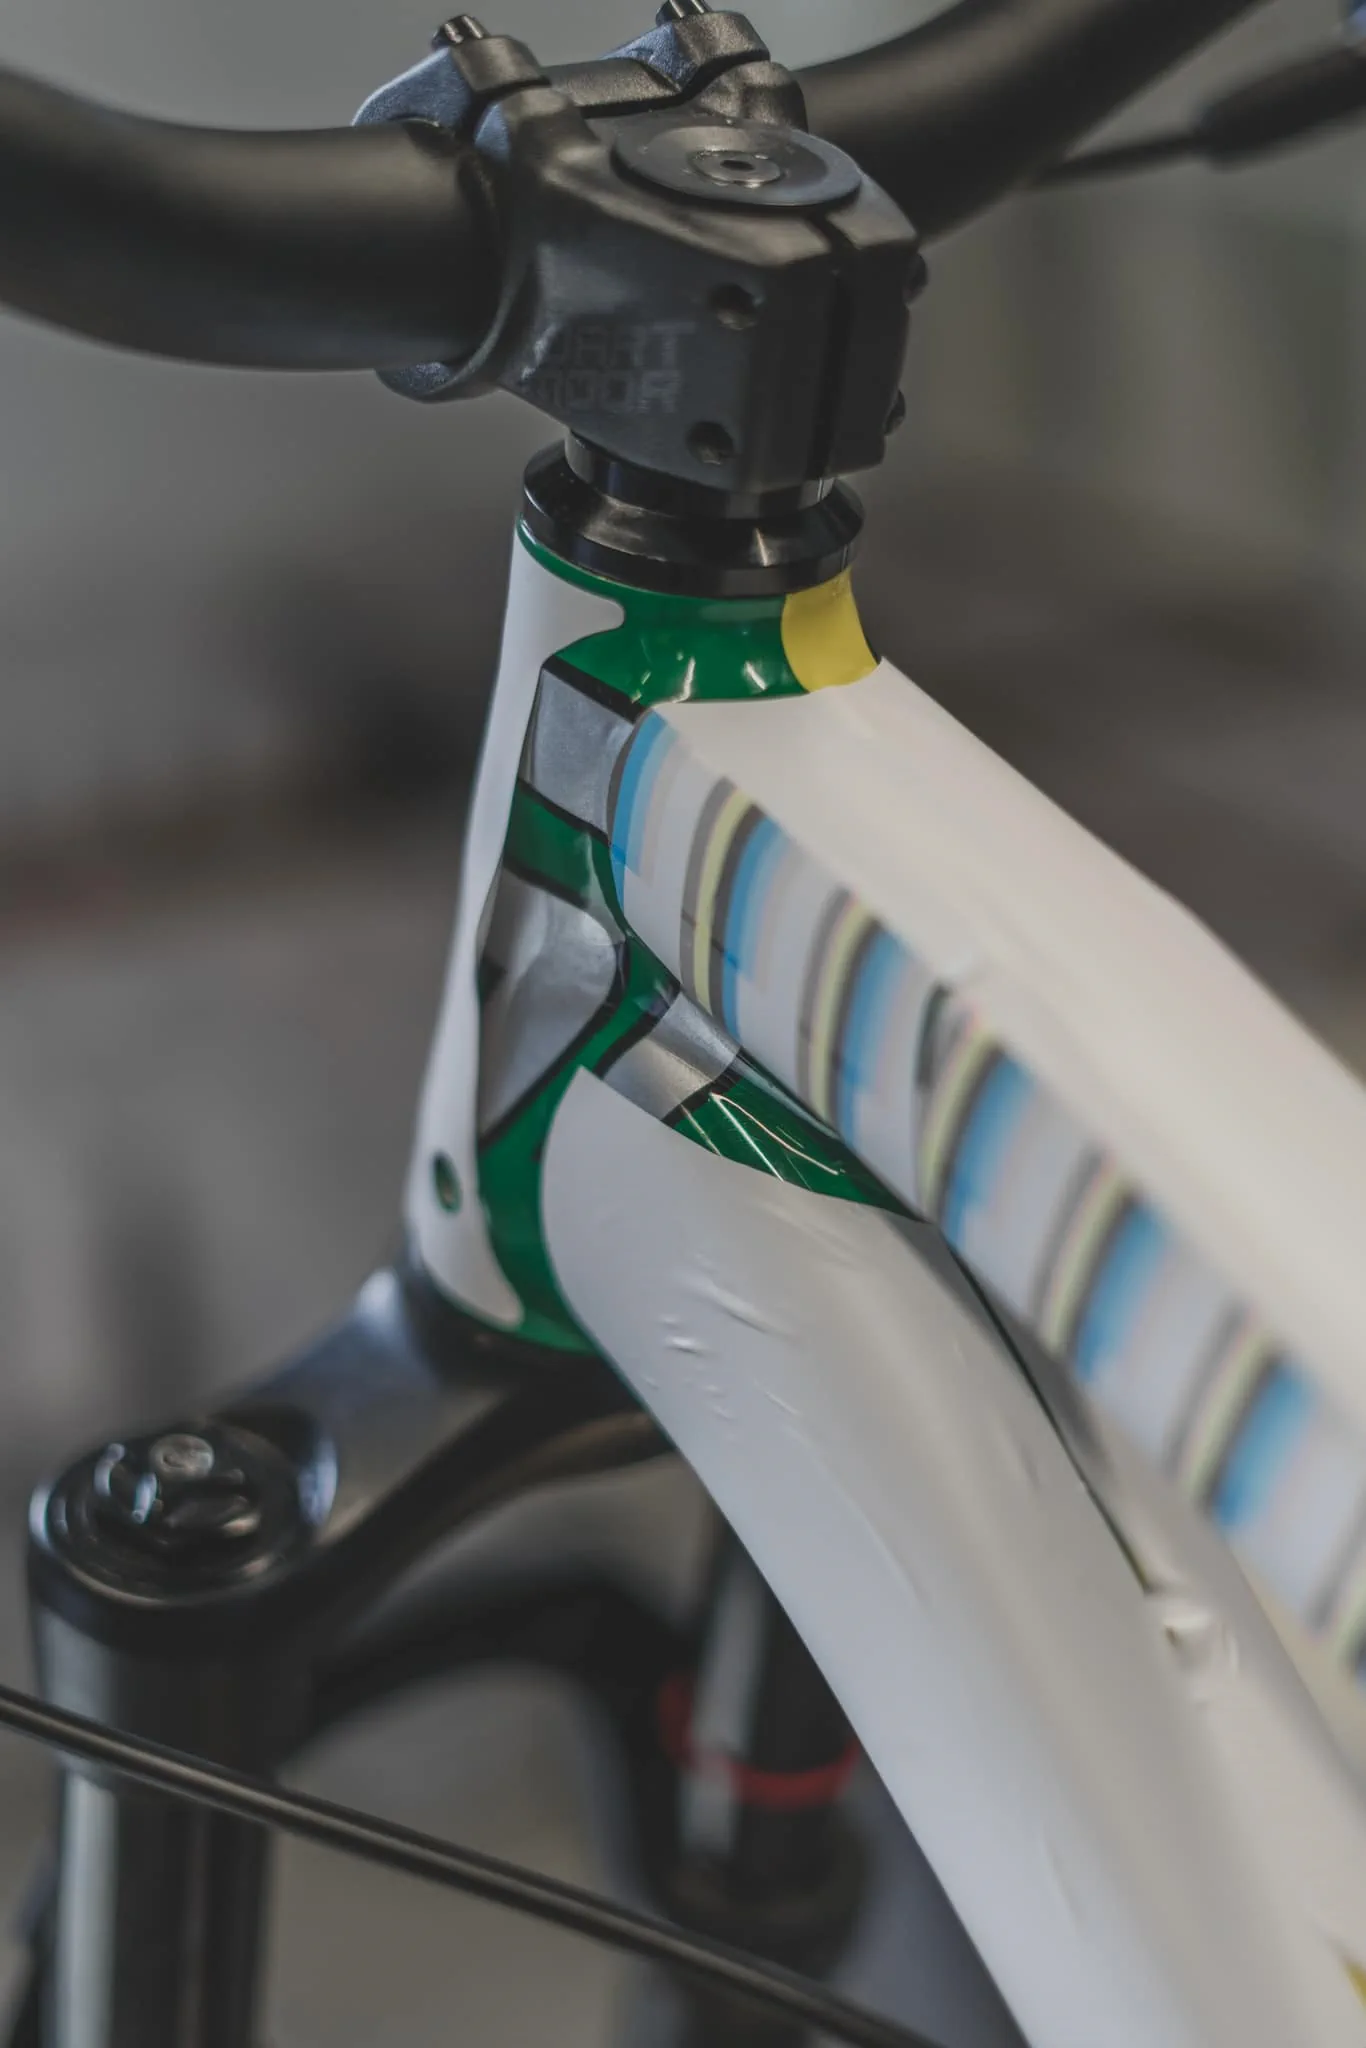 Zielono-żółty rower z widoczną amortyzacją i podczas przygotowań do oklejania, stojący w warsztacie